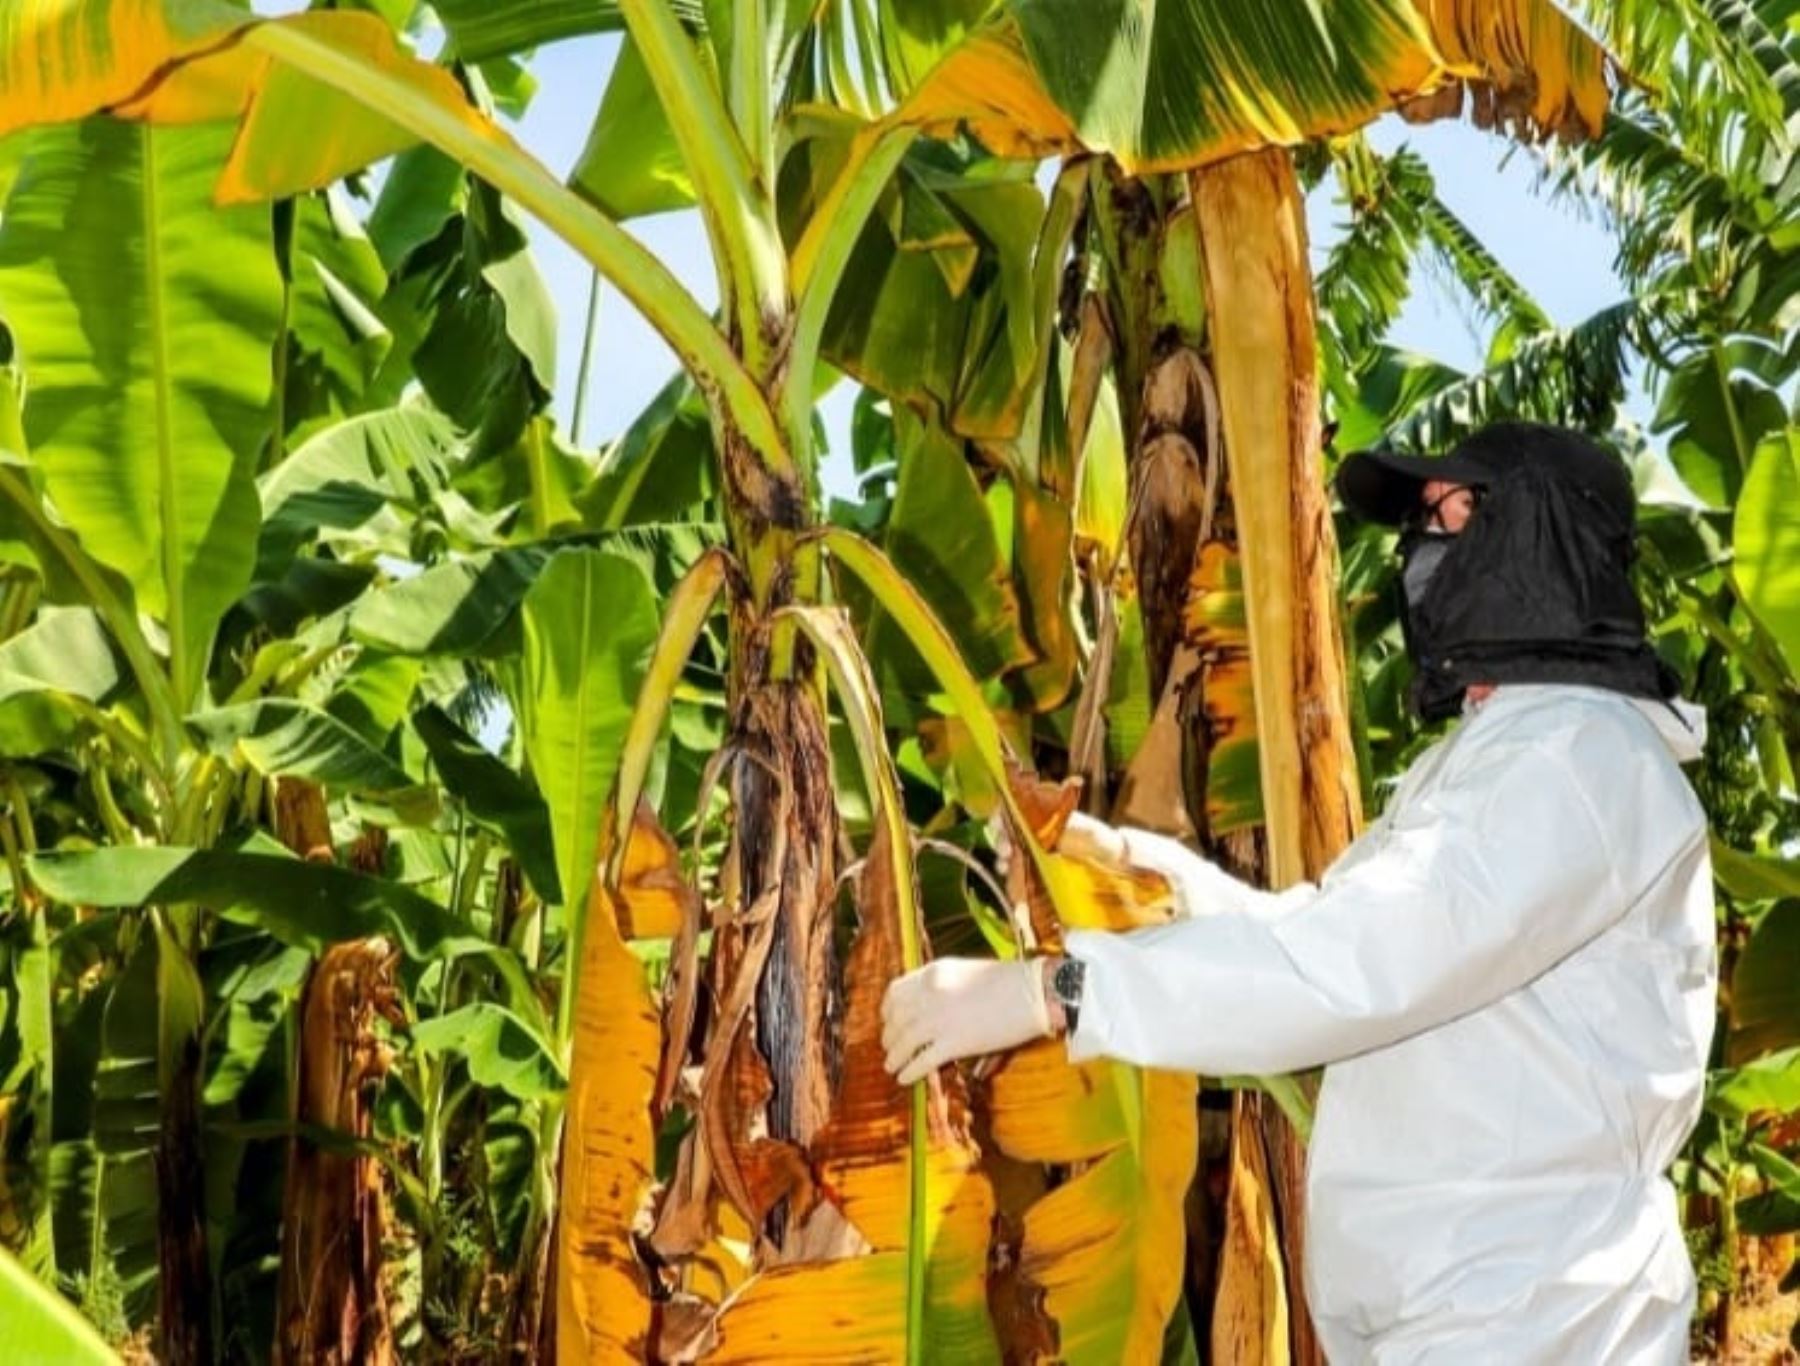 Senasa adopta medidas para controlar el brote de la plaga Fusarium Raza 4 Tropical, que afecta a los cultivos de banano y plátano, reportado en el distrito piurano de Querecotillo.